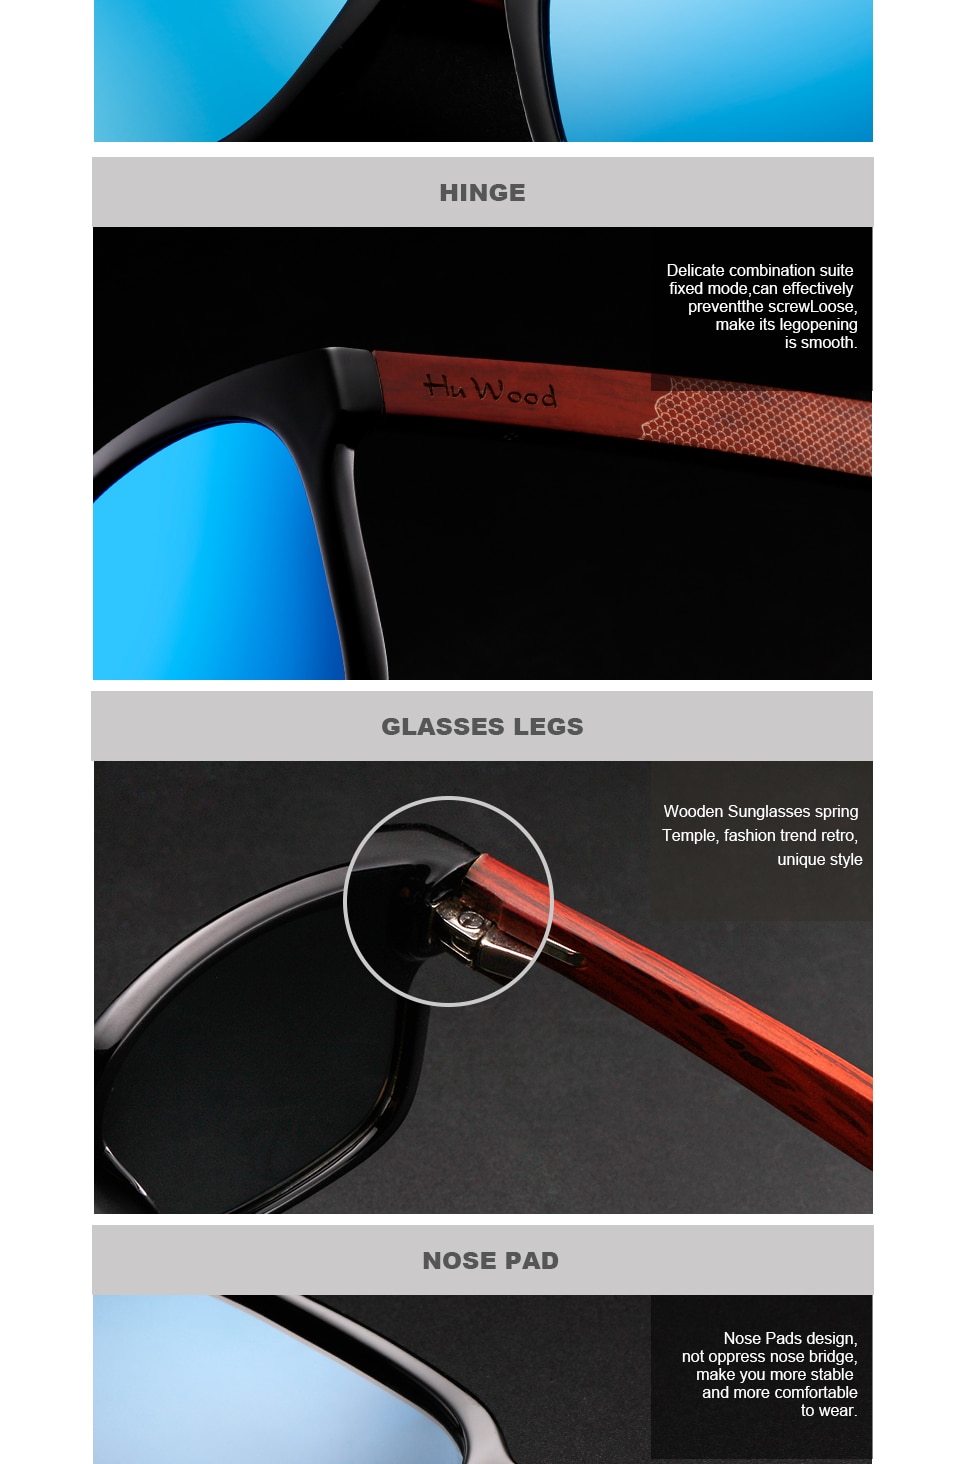 Hu gafas de sol de madera para mujer marca de moda diseñador UV400 lentes de espejo polarizadas gafas de sol para hombres 2018 nueva llegada